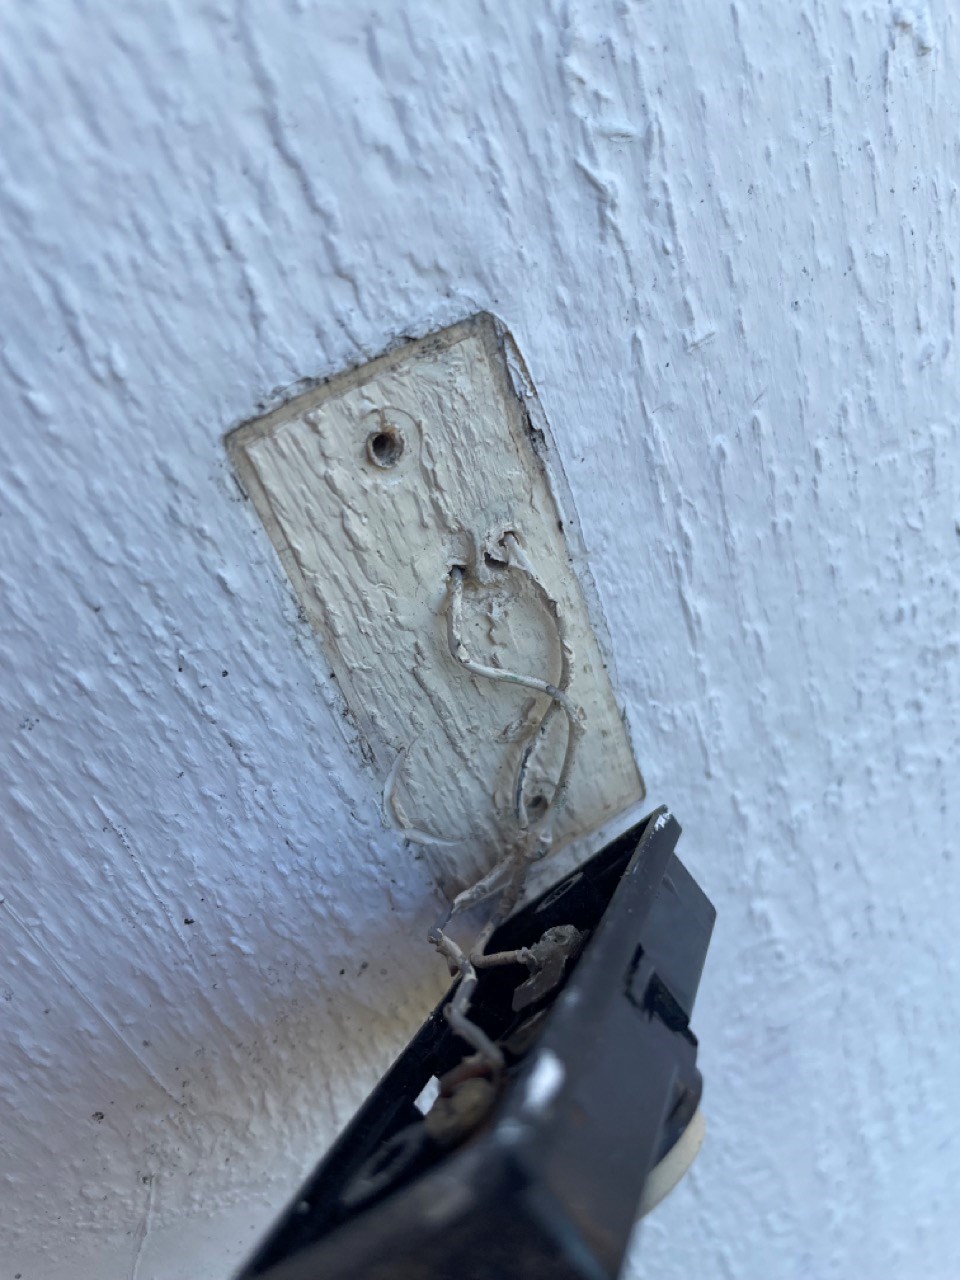 Installering av Ubiquiti G4 Doorbell i Friedland ringeklokke - IMG_5377 Large.jpeg - tbygger